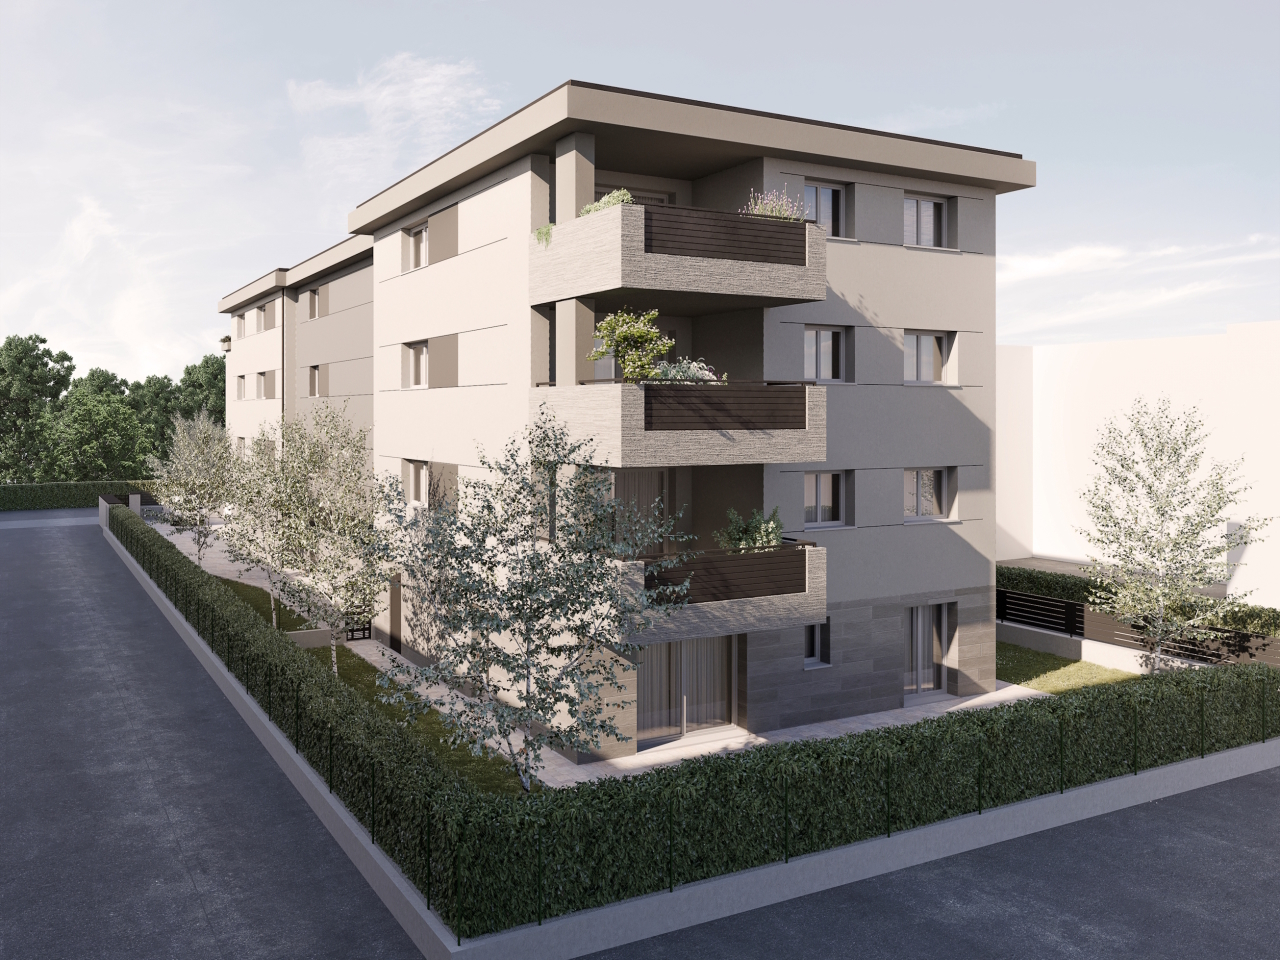 Appartamento in vendita a Castel San Pietro Terme, 4 locali, prezzo € 310.000 | PortaleAgenzieImmobiliari.it